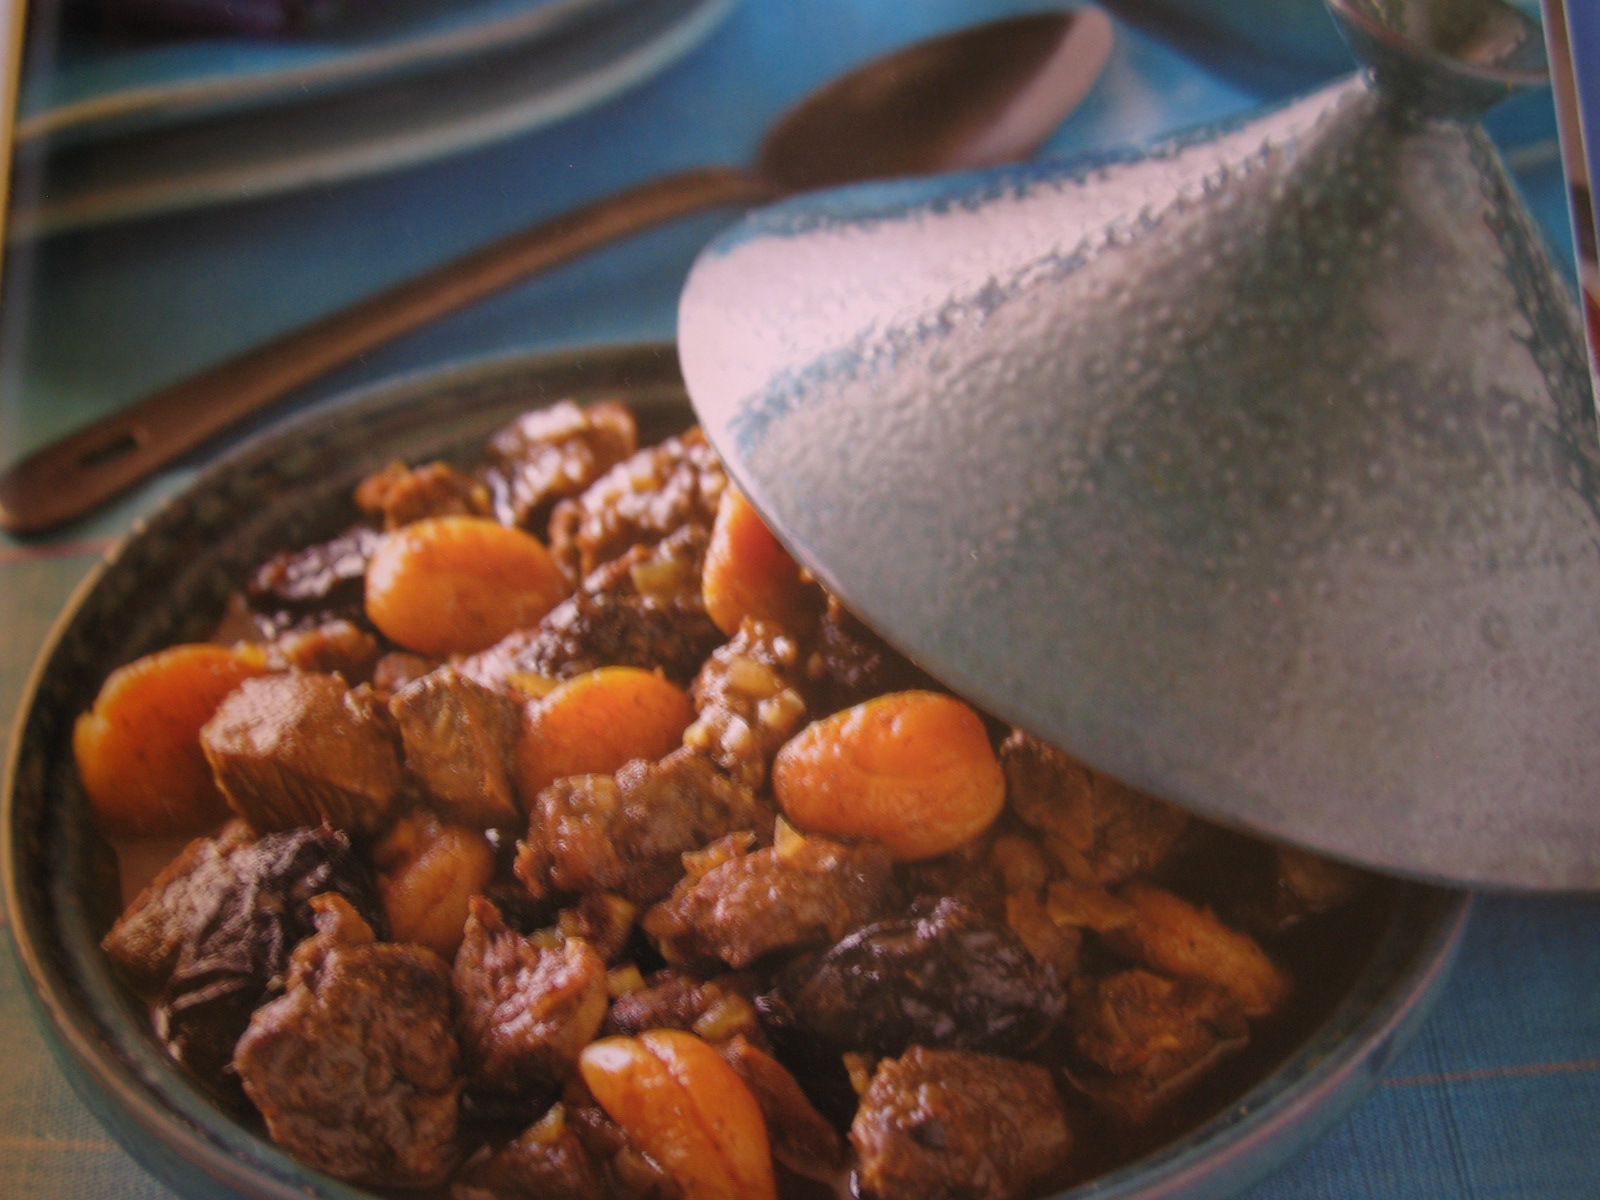 las cinco mejores gastronomias del planeta segun tu opinion personal. Moroccan+food